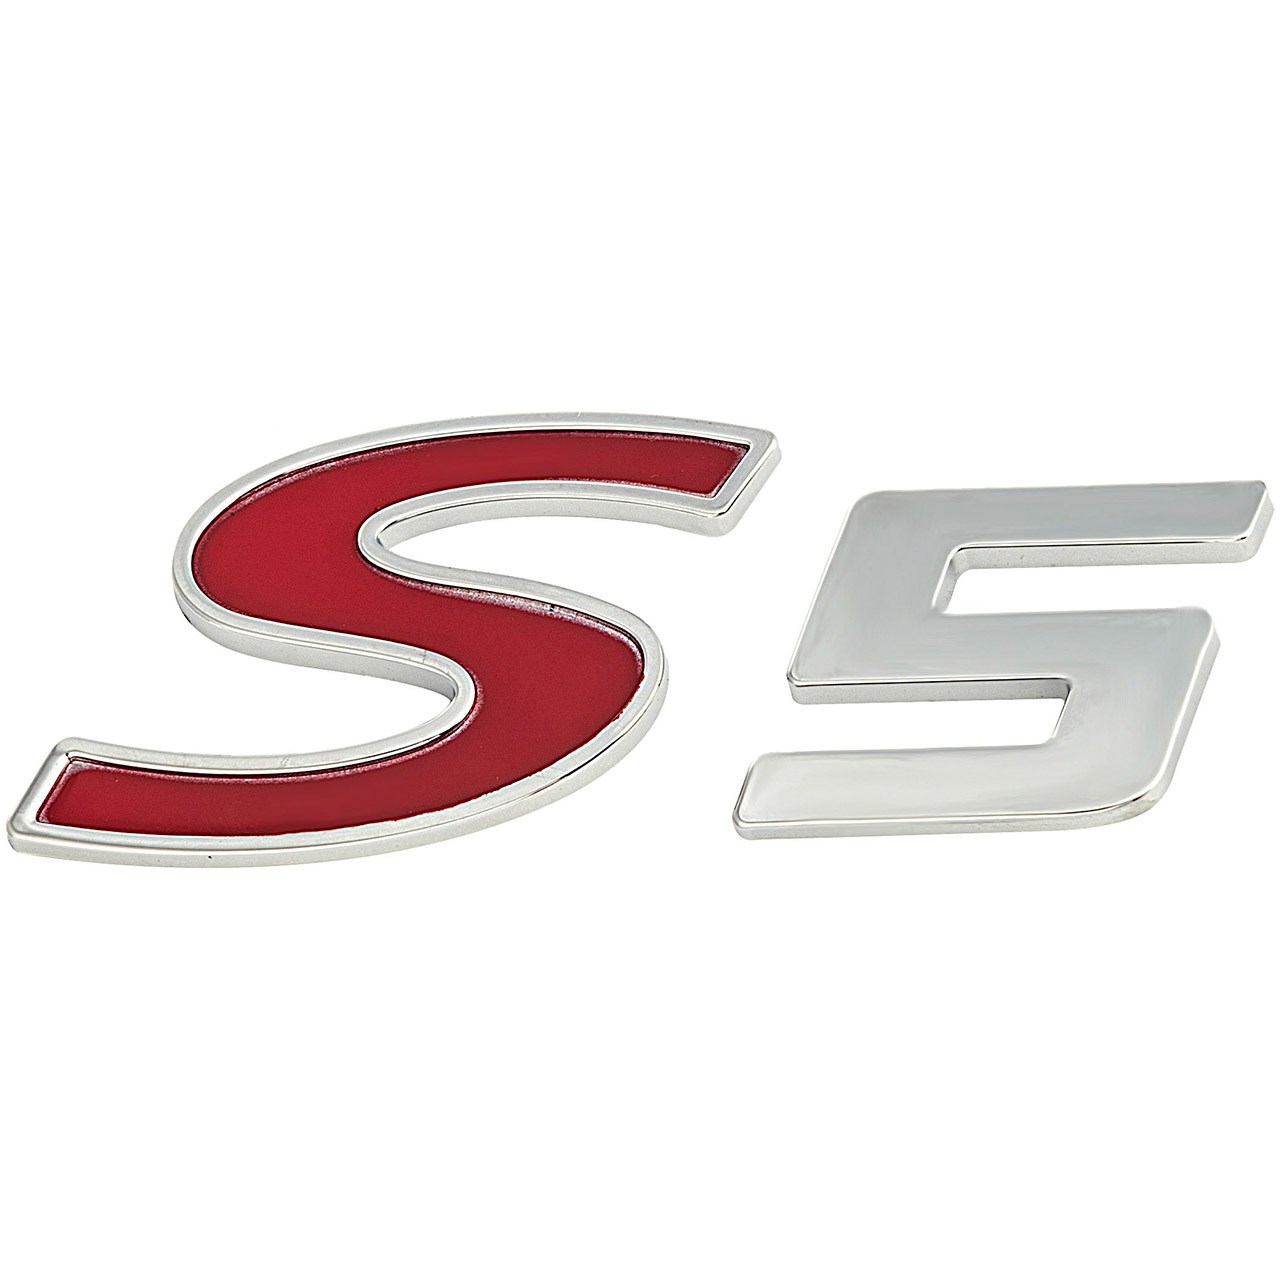 آرم S5 مدل 3904310U1516 مناسب برای خودروهای جک